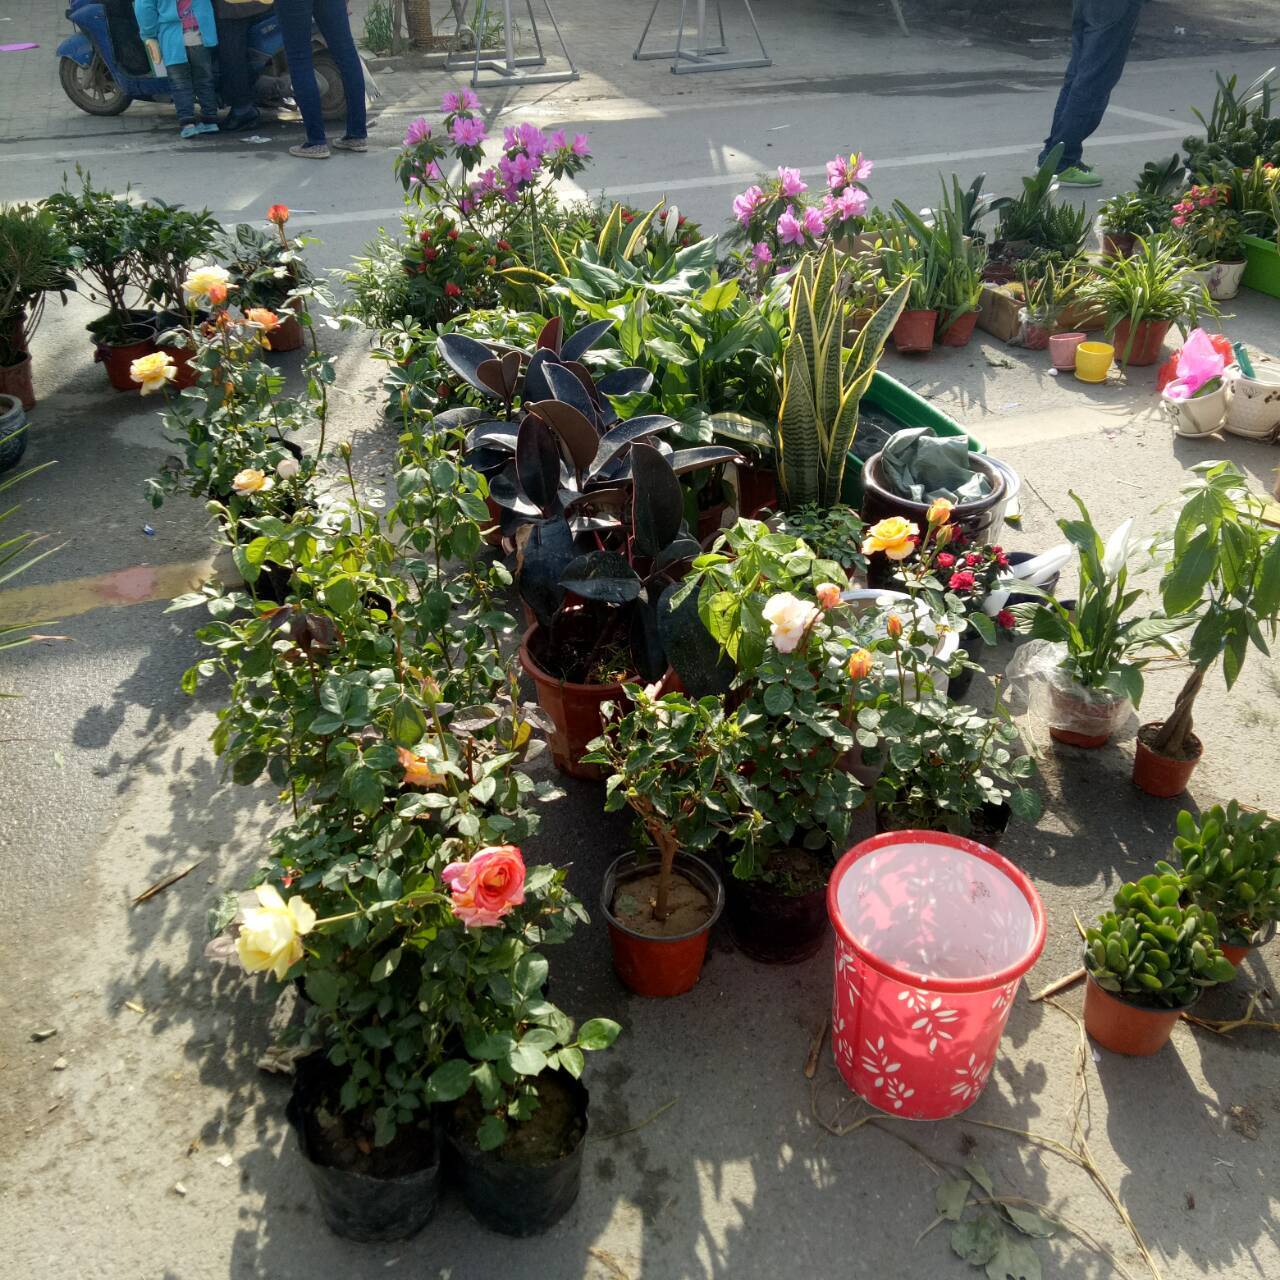 三农拍拍:庙会上的花卉市场,有我特别喜欢的盆花!